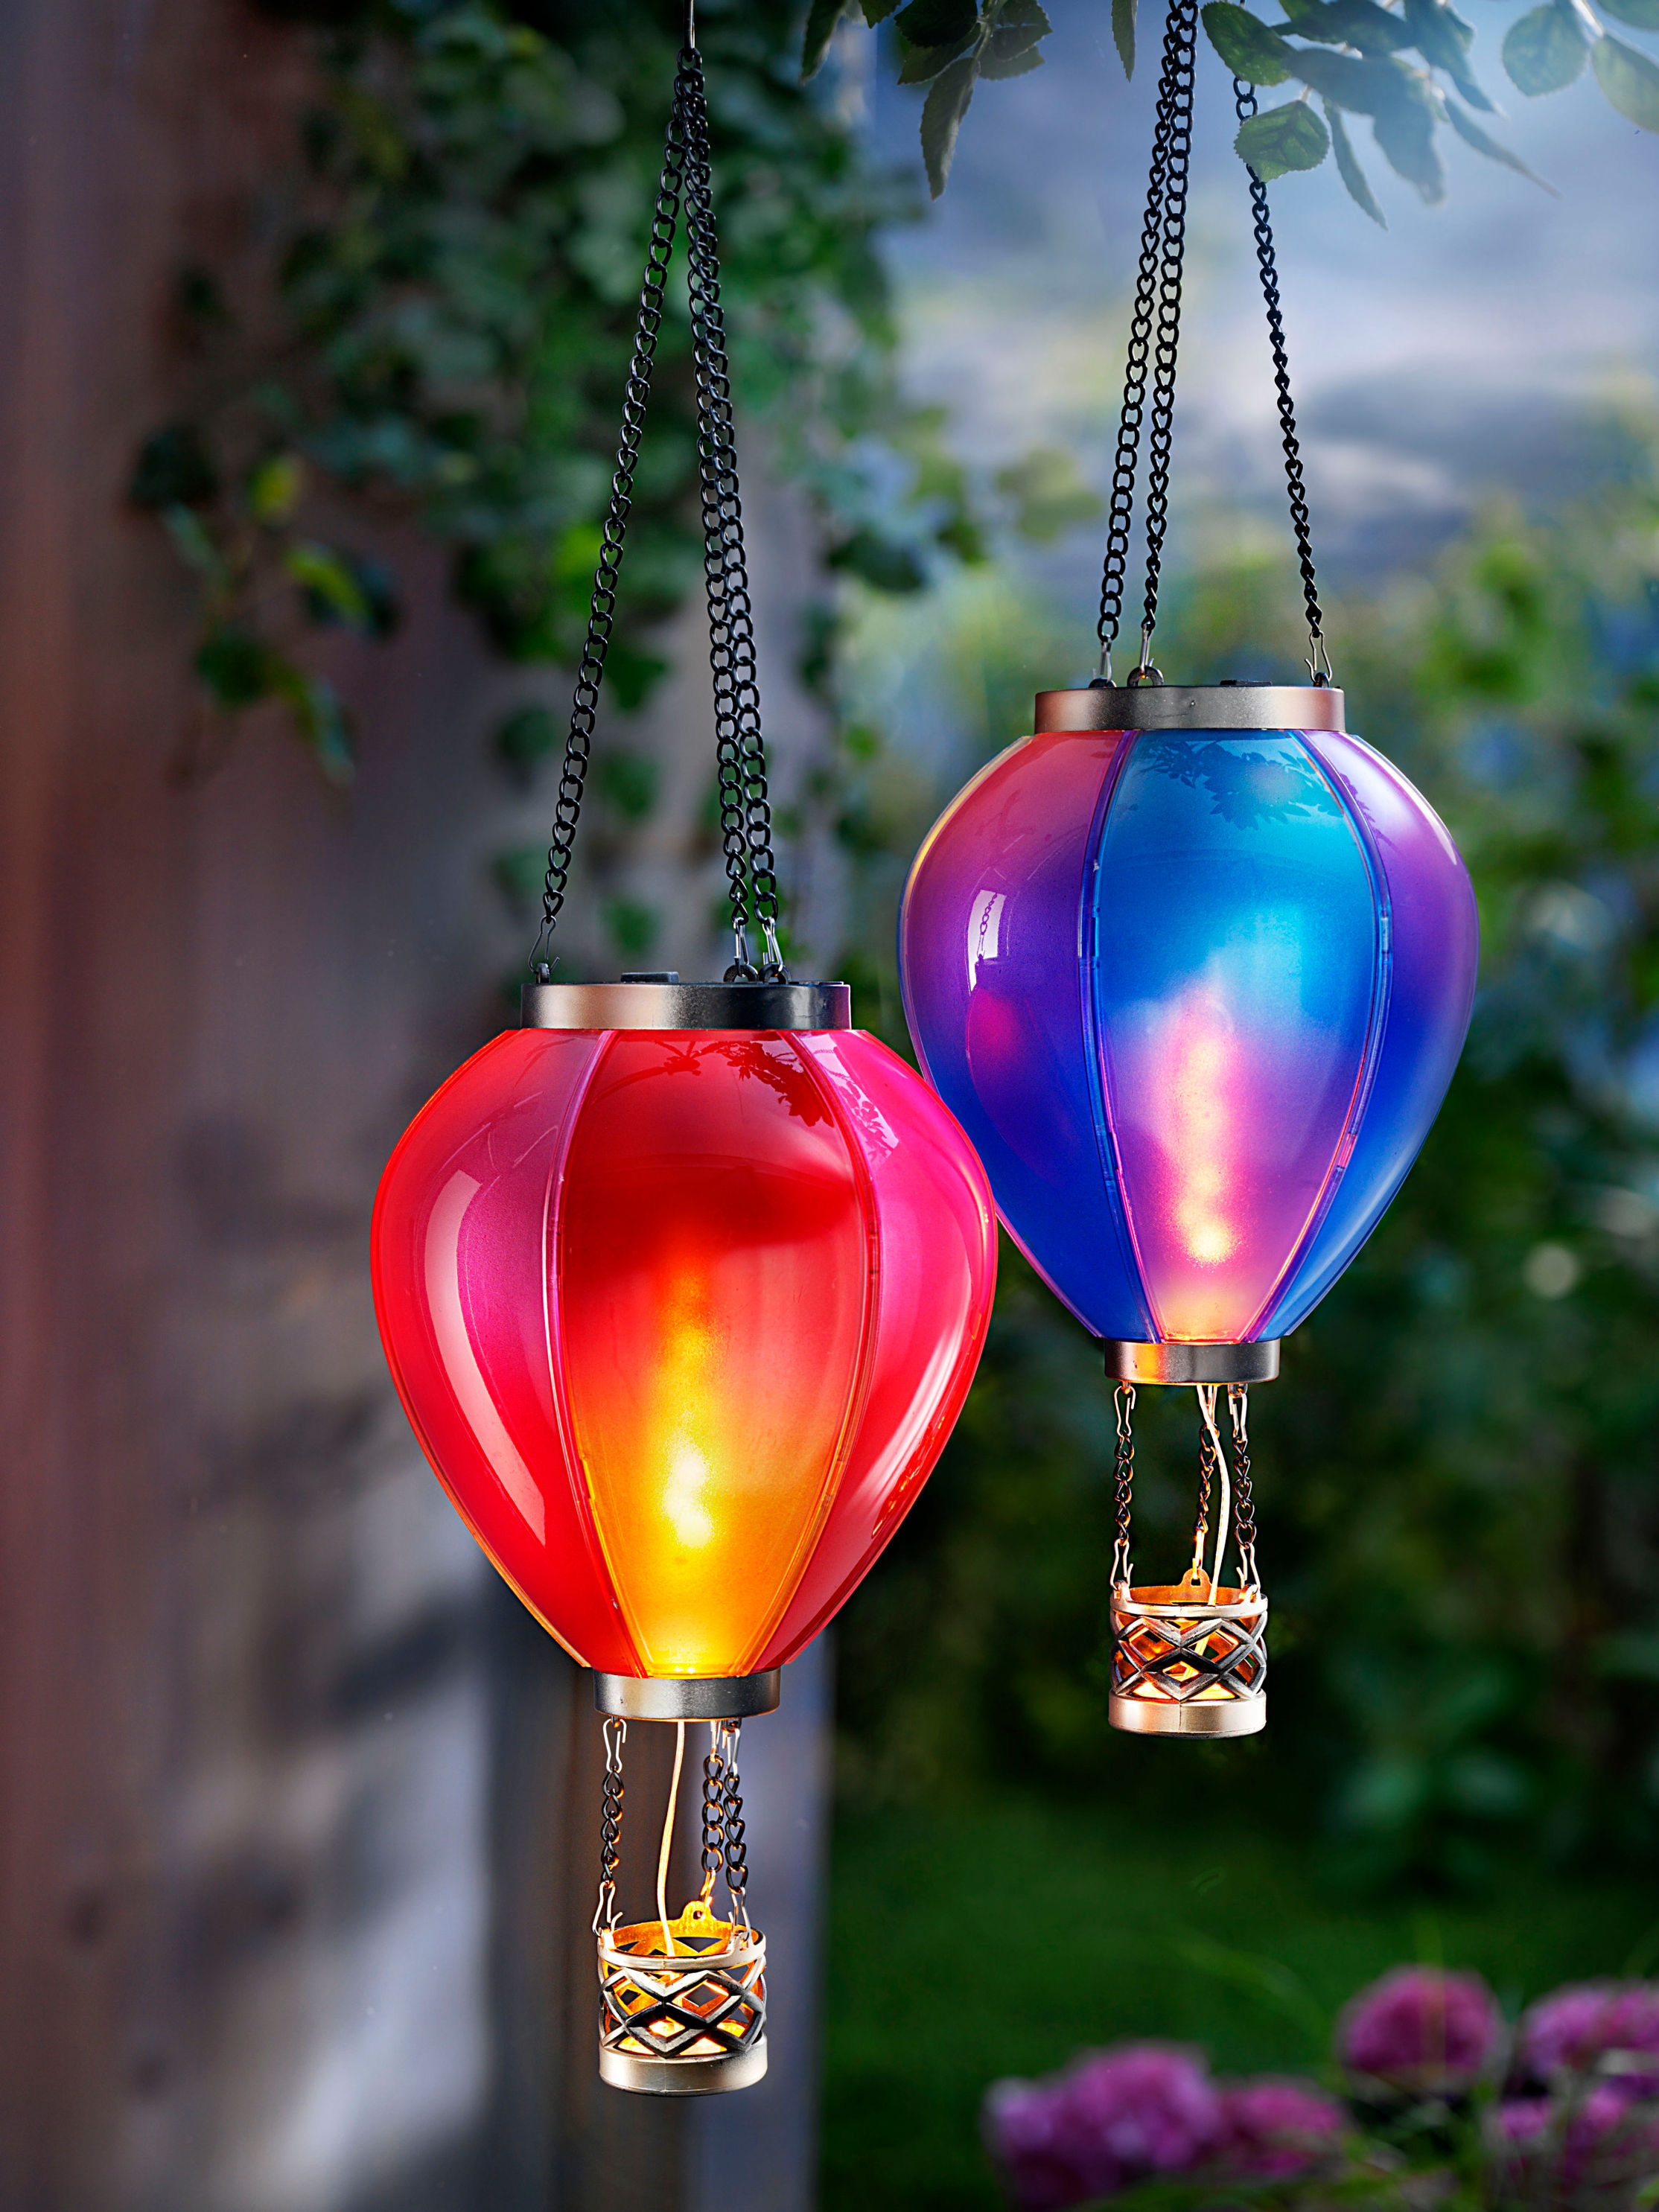 Solar-Hängedeko Heißluftballon Farbe: rot bestellen | Weltbild.at